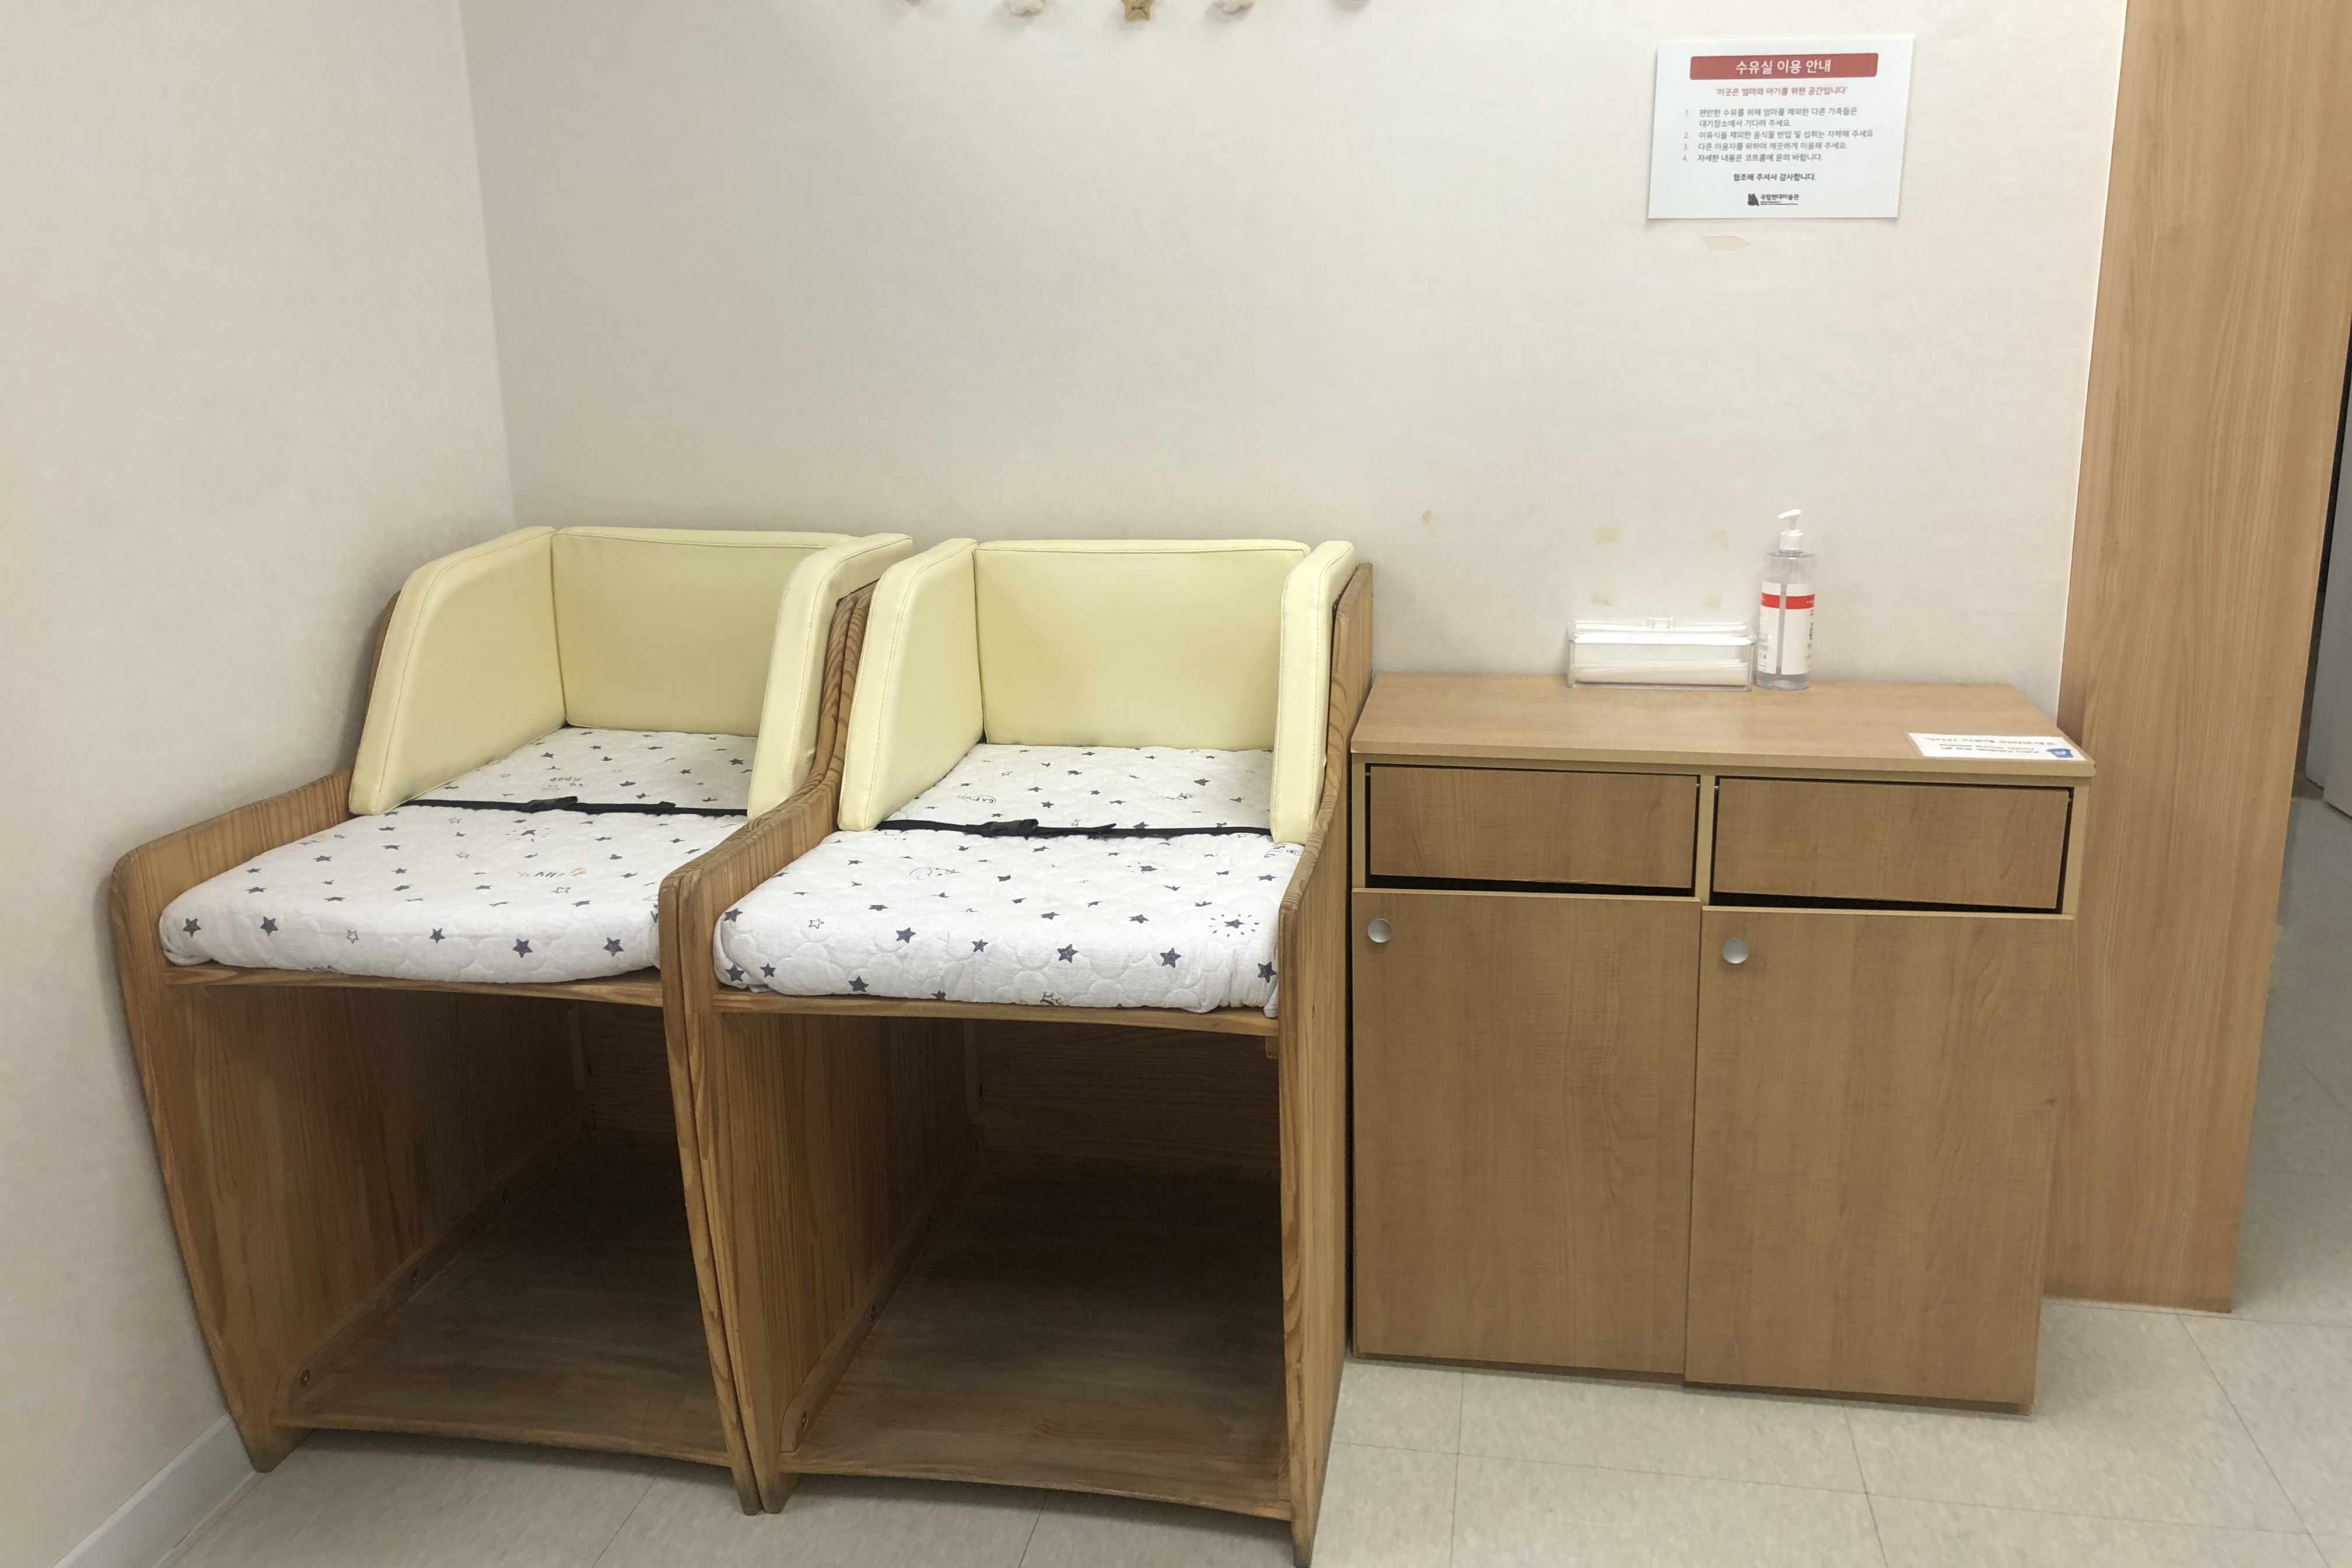 임산부 및 유아휴게공간0 : 국립현대미술관서울관 수유실 내부에 설치되어있는 기저귀교환대